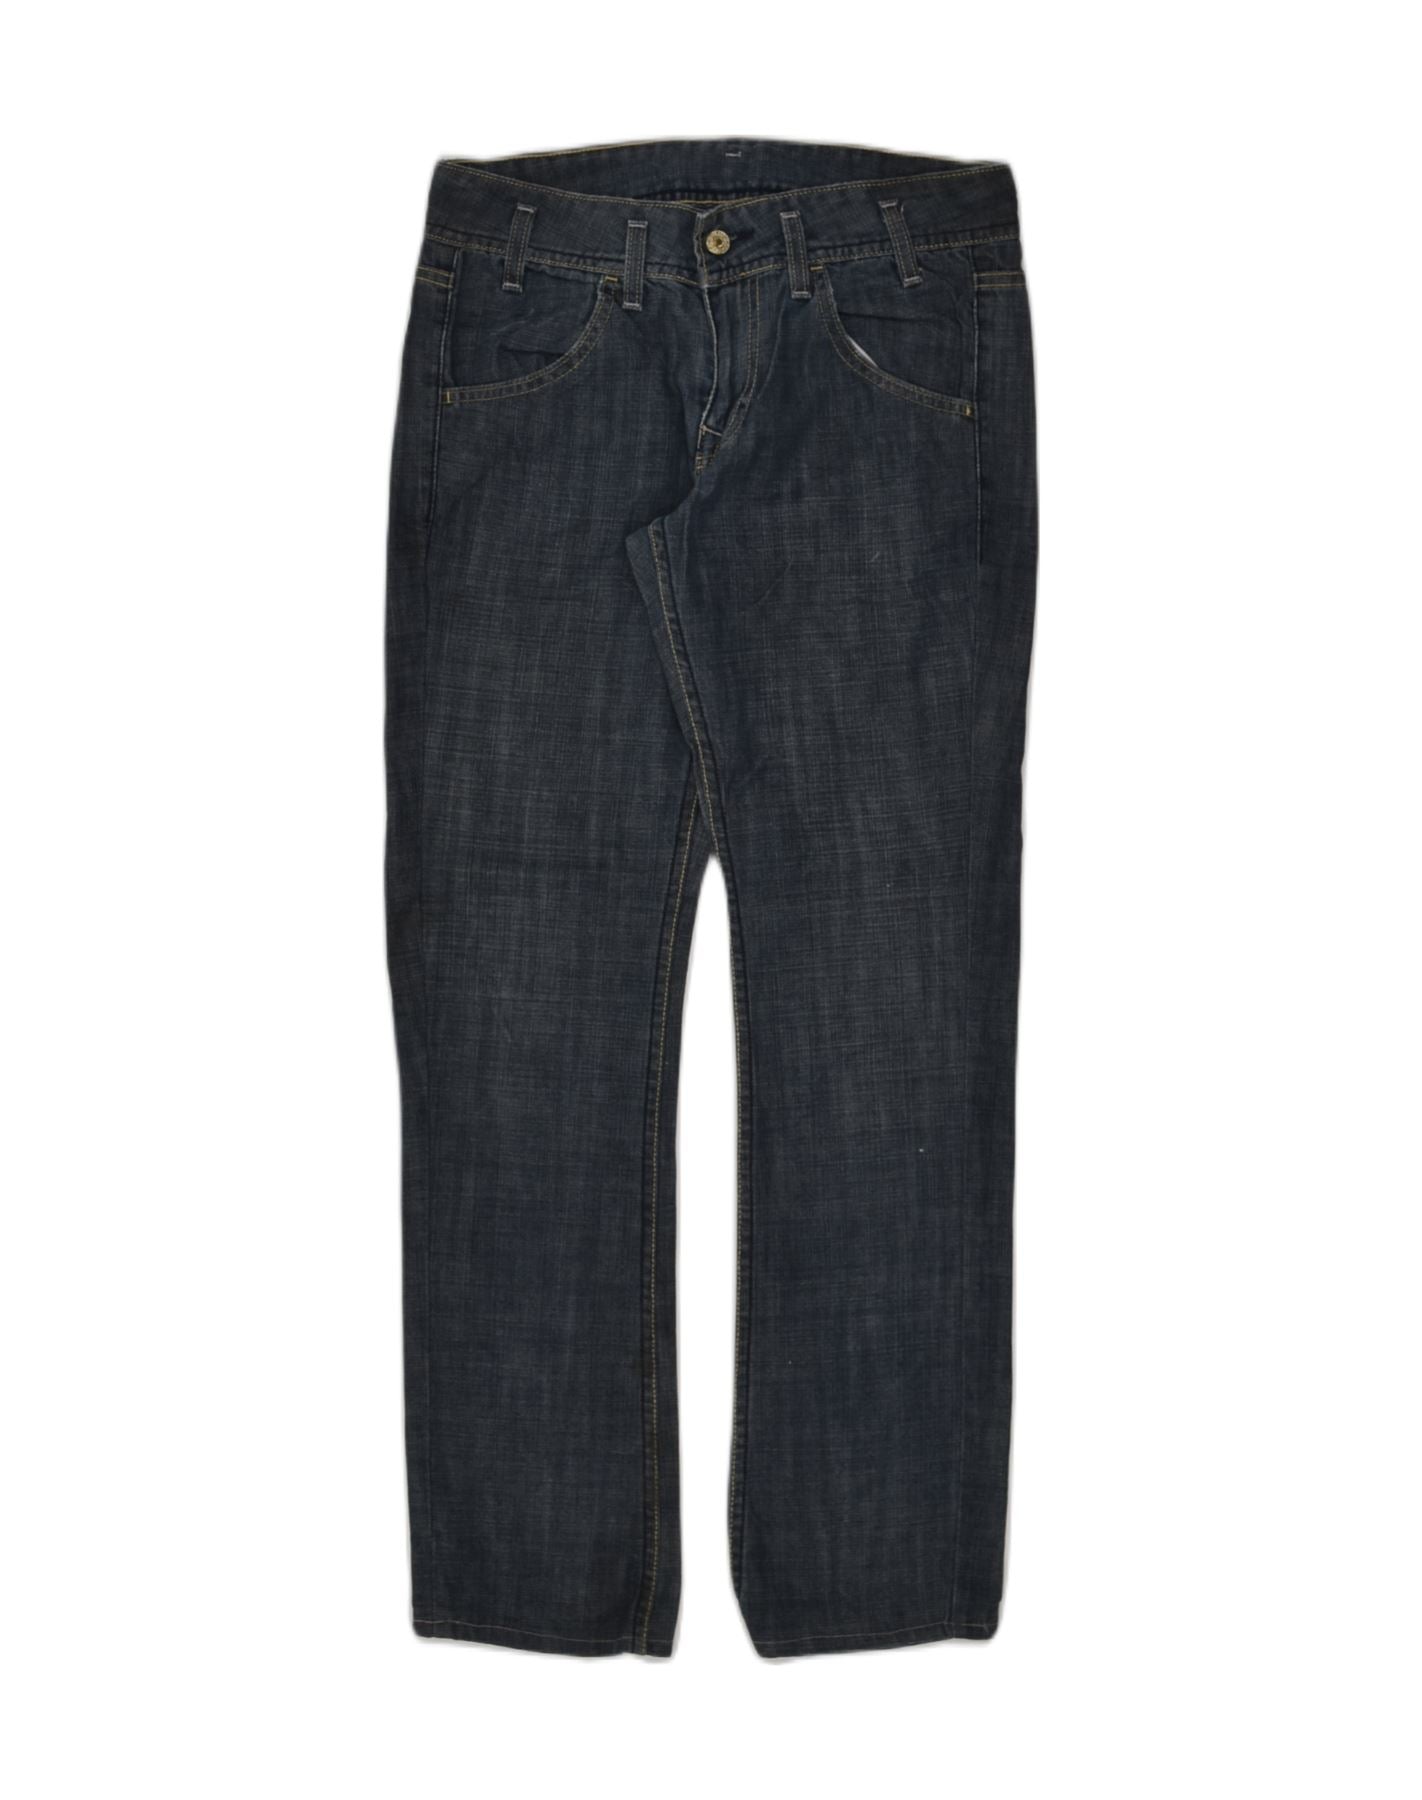 EDDIE BAUER Womens Boyfriend Slim Jeans US 10 Medium W34 L31 Navy Blue, Vintage & Second-Hand Clothing Online